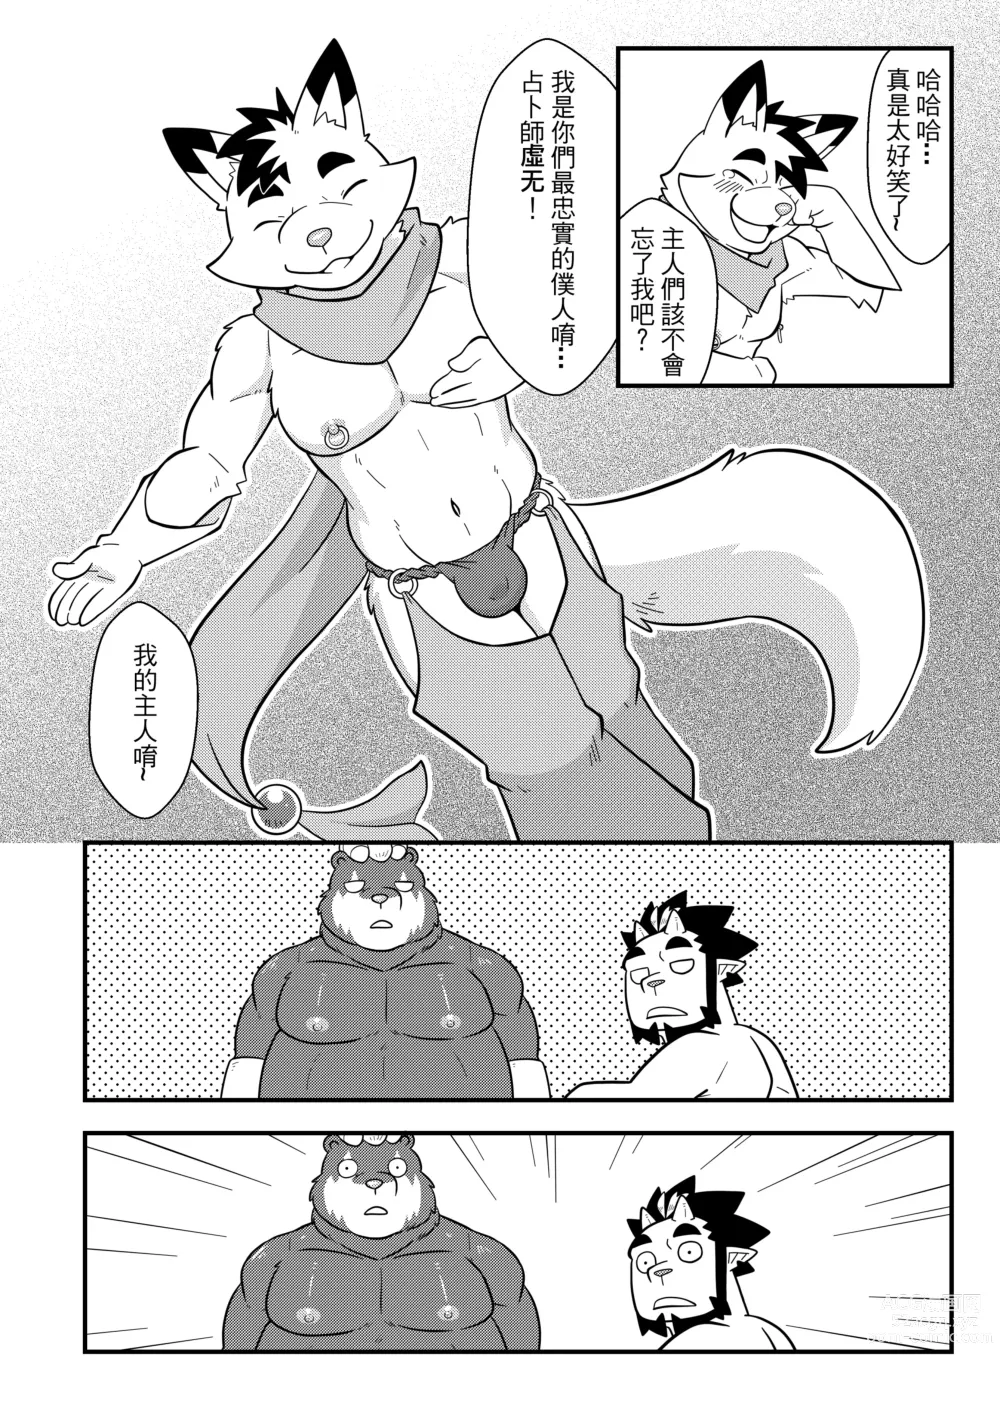 Page 9 of doujinshi 勇者的大小只有魔王塞得下4